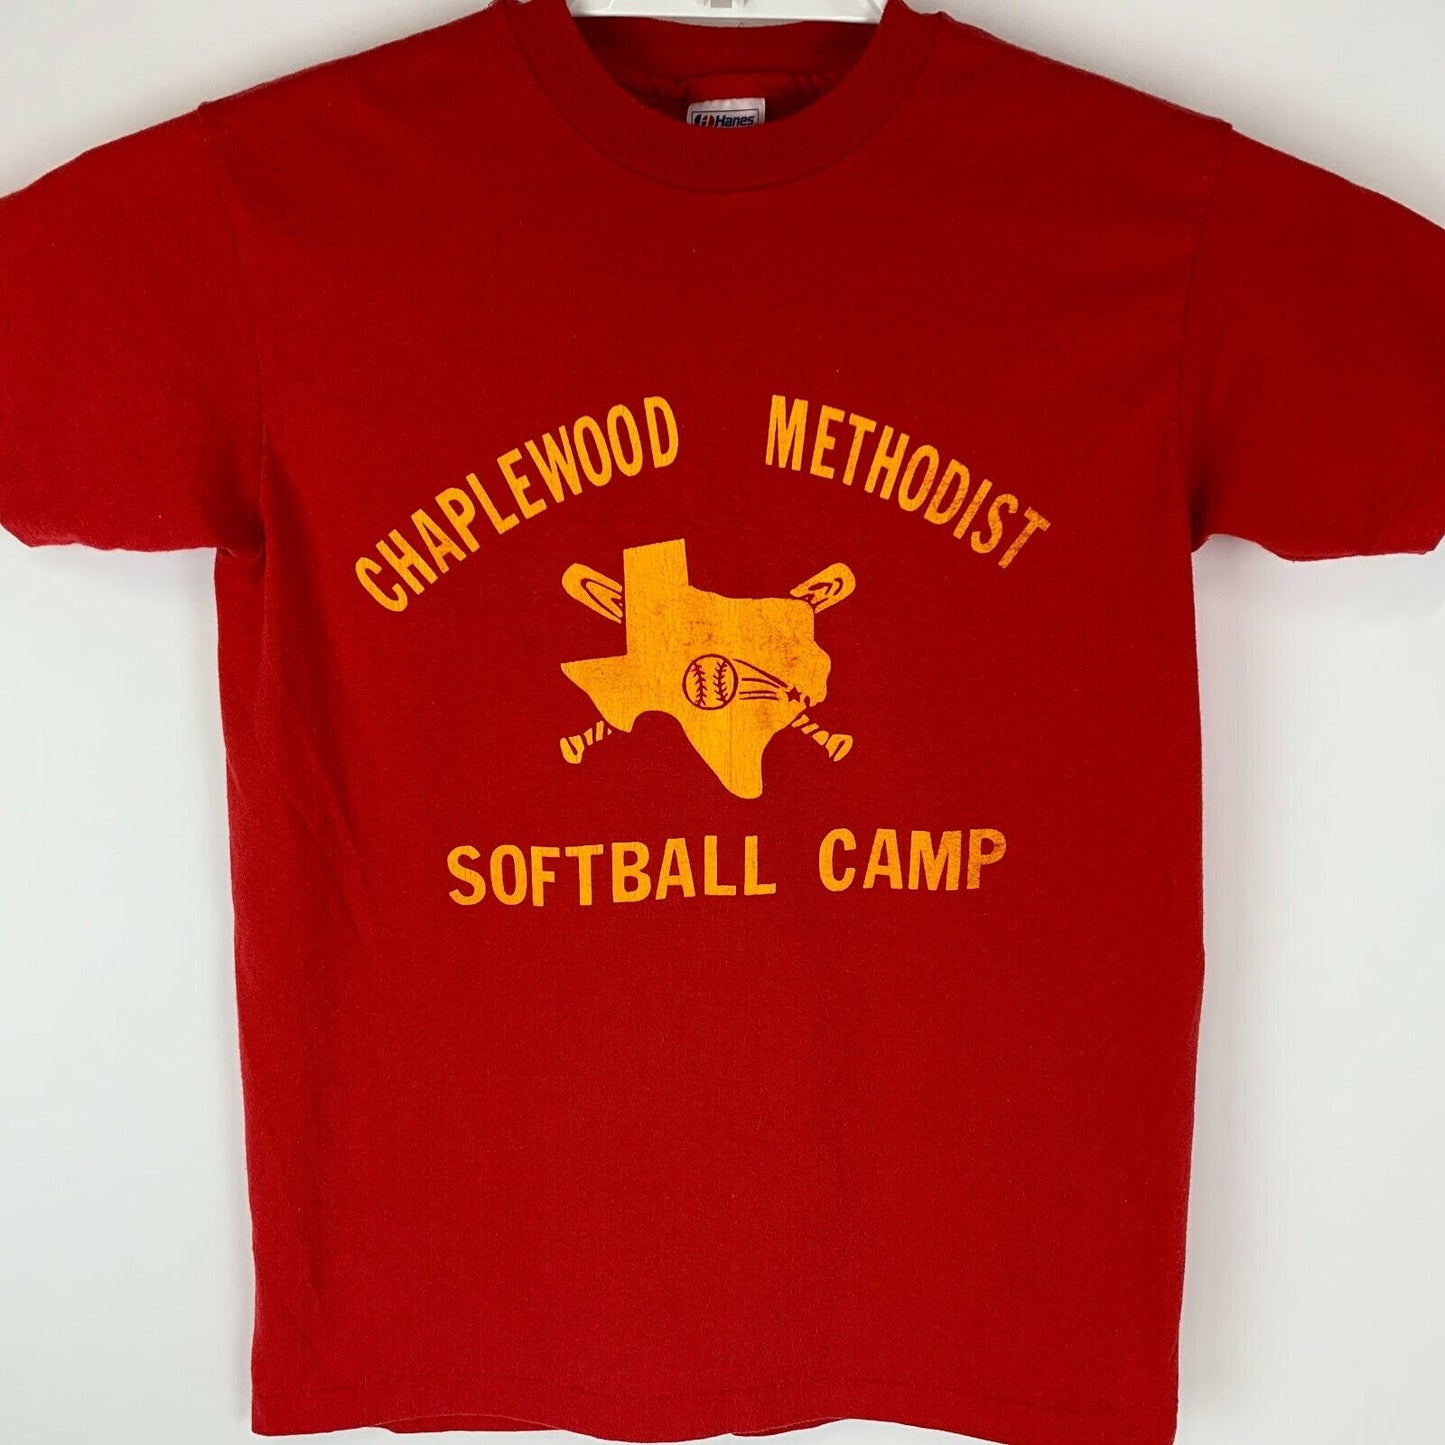 Chapelwood Methodist Softball Camp Vintage 80s T Shirt Houston Texas USA Small